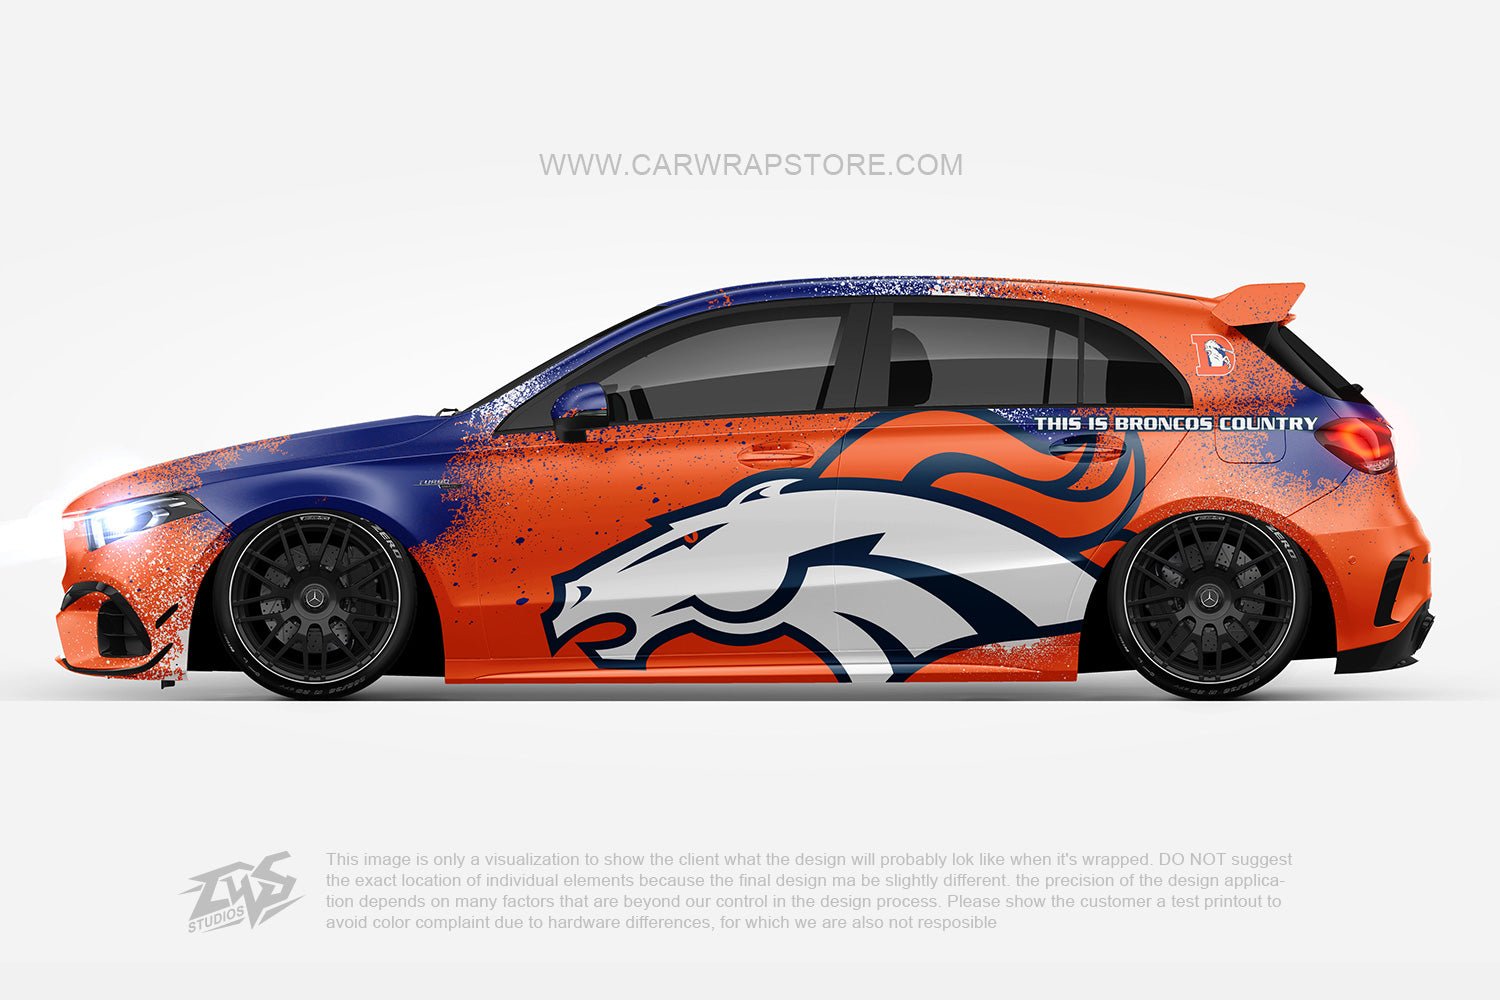 Denver Broncos【NFL-05】 - Car Wrap Store